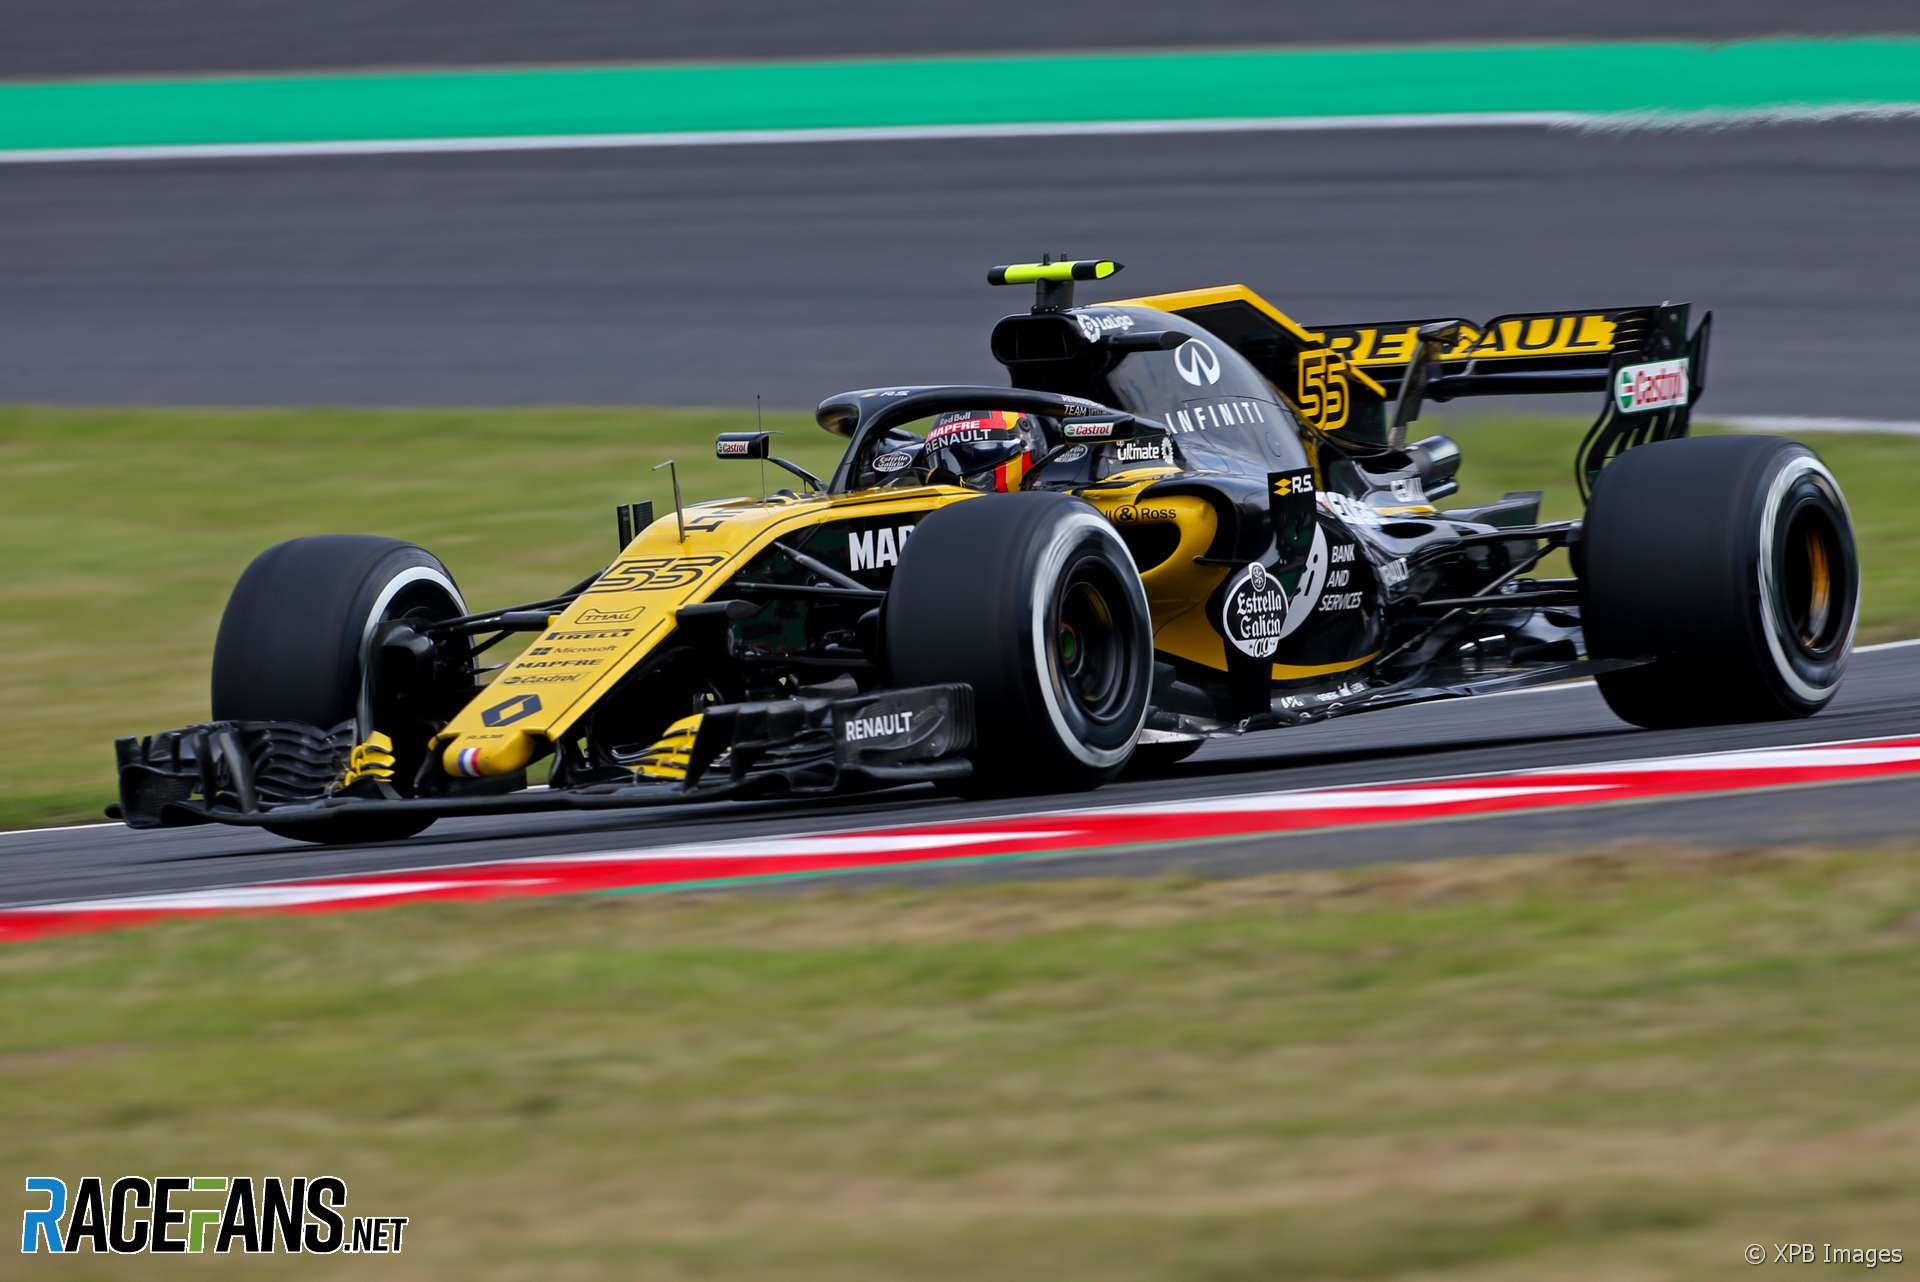 Carlos Sainz Jnr, Renault, Suzuka, 2018